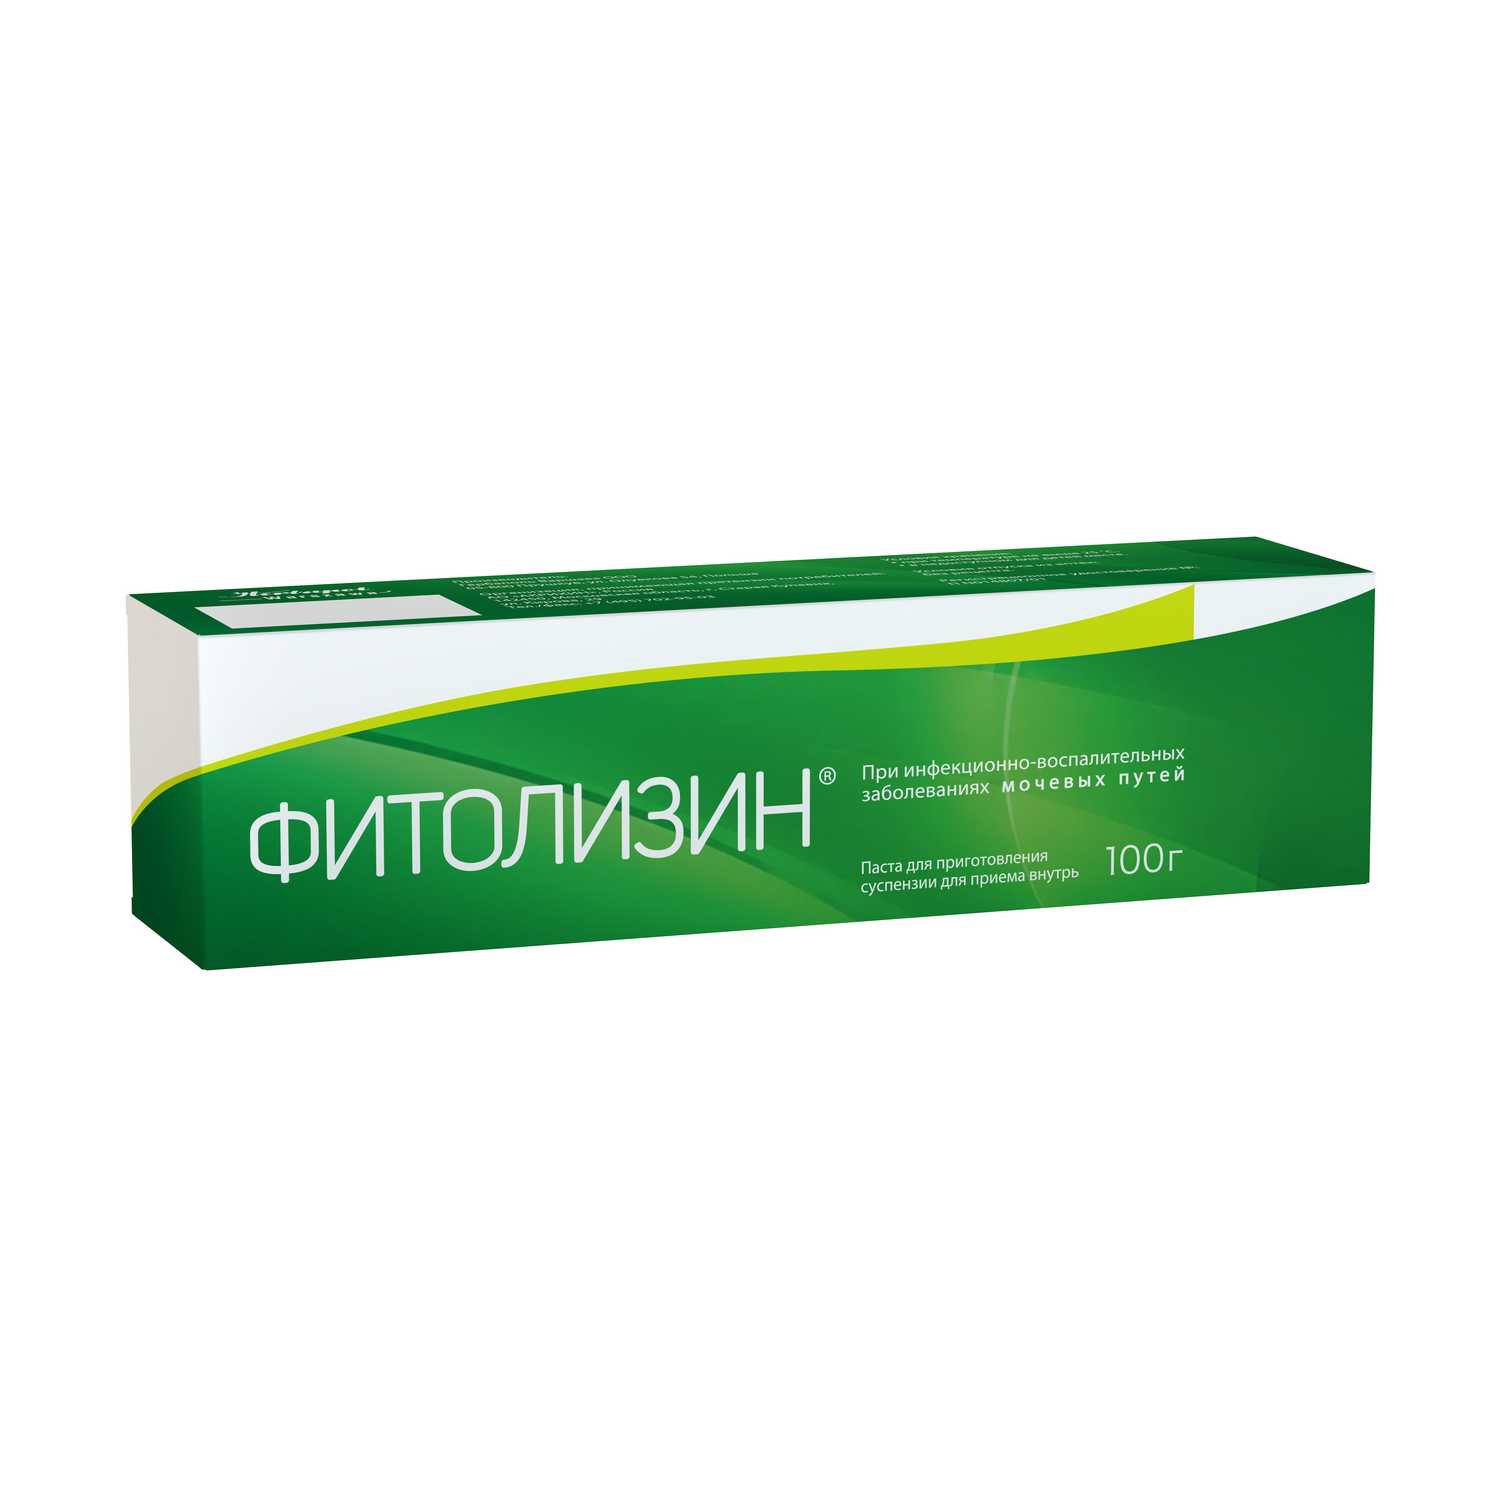 Купить препараты для лечения Цистит в интернет-аптеке, цены на лекарства от Цистит в Москве